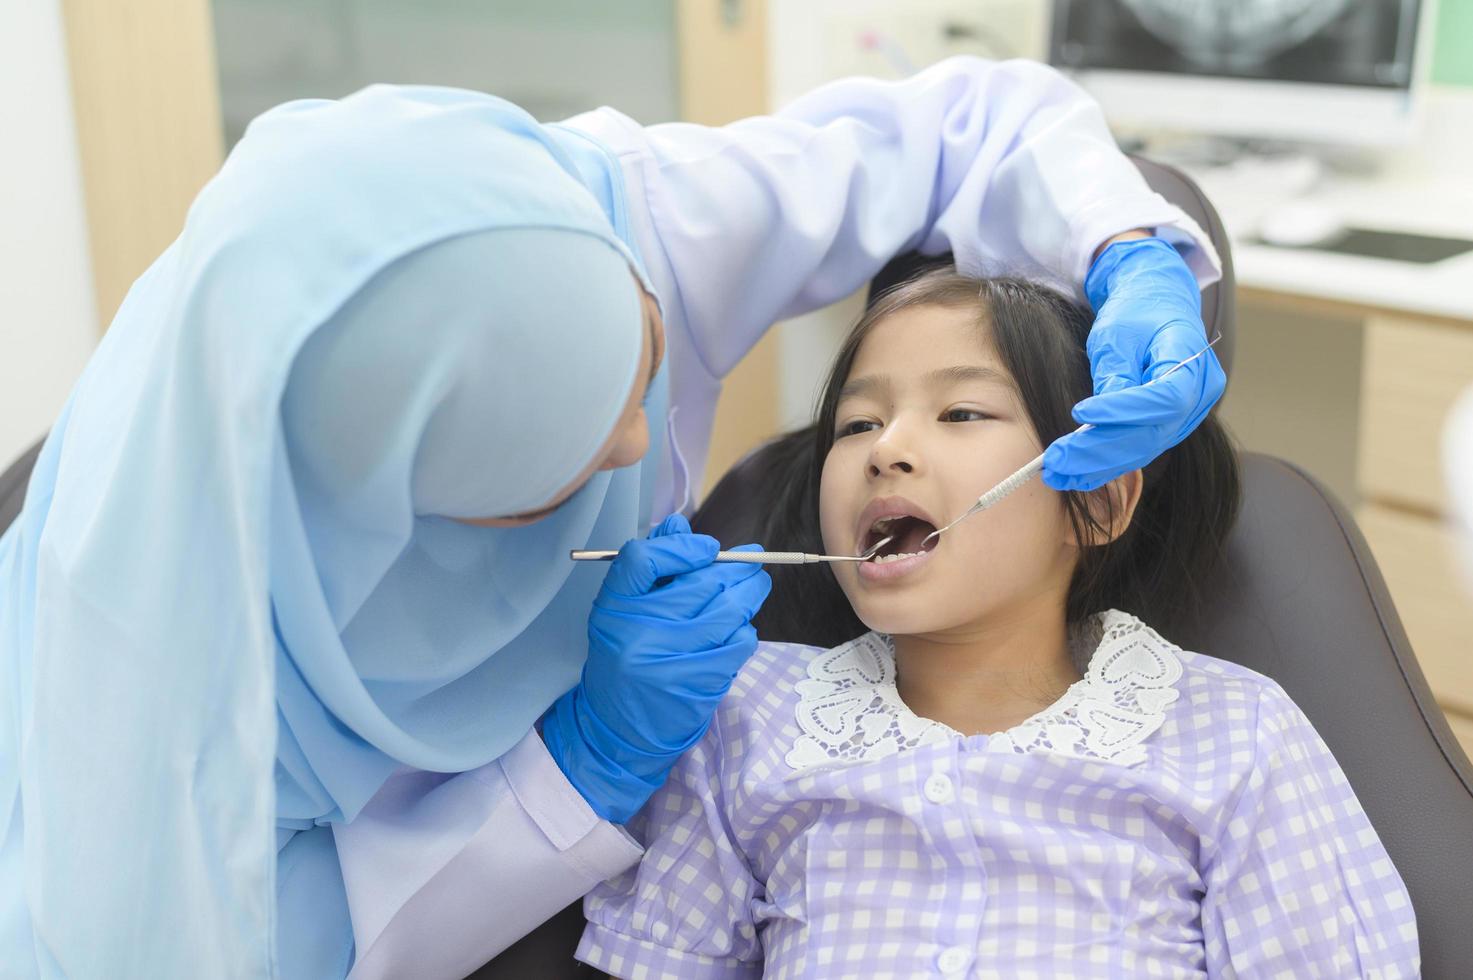 una niña linda con los dientes examinados por un dentista musulmán en la clínica dental, revisión de dientes y concepto de dientes sanos foto